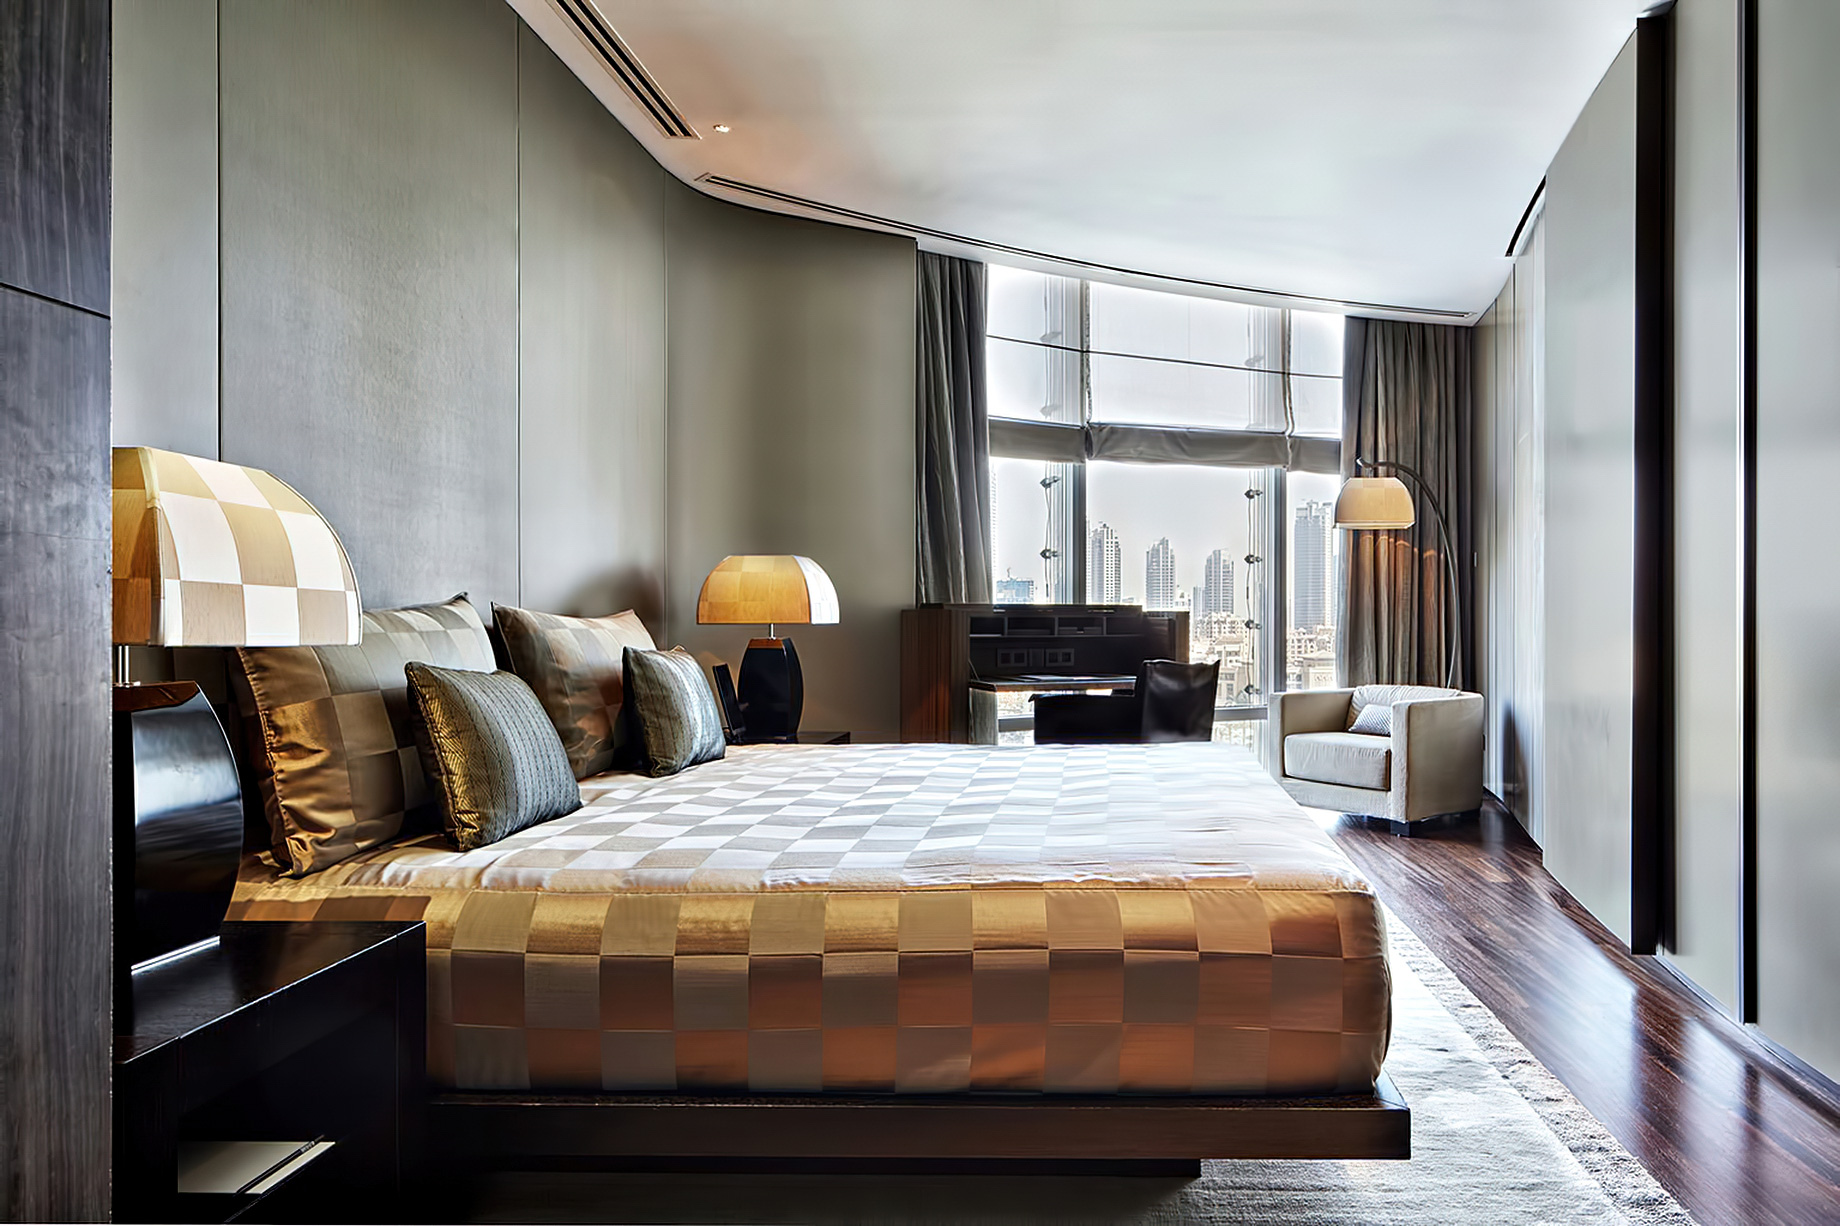 Armani Hotel Dubai – Burj Khalifa, Dubai, UAE – Armani Executive Suite Bedroom